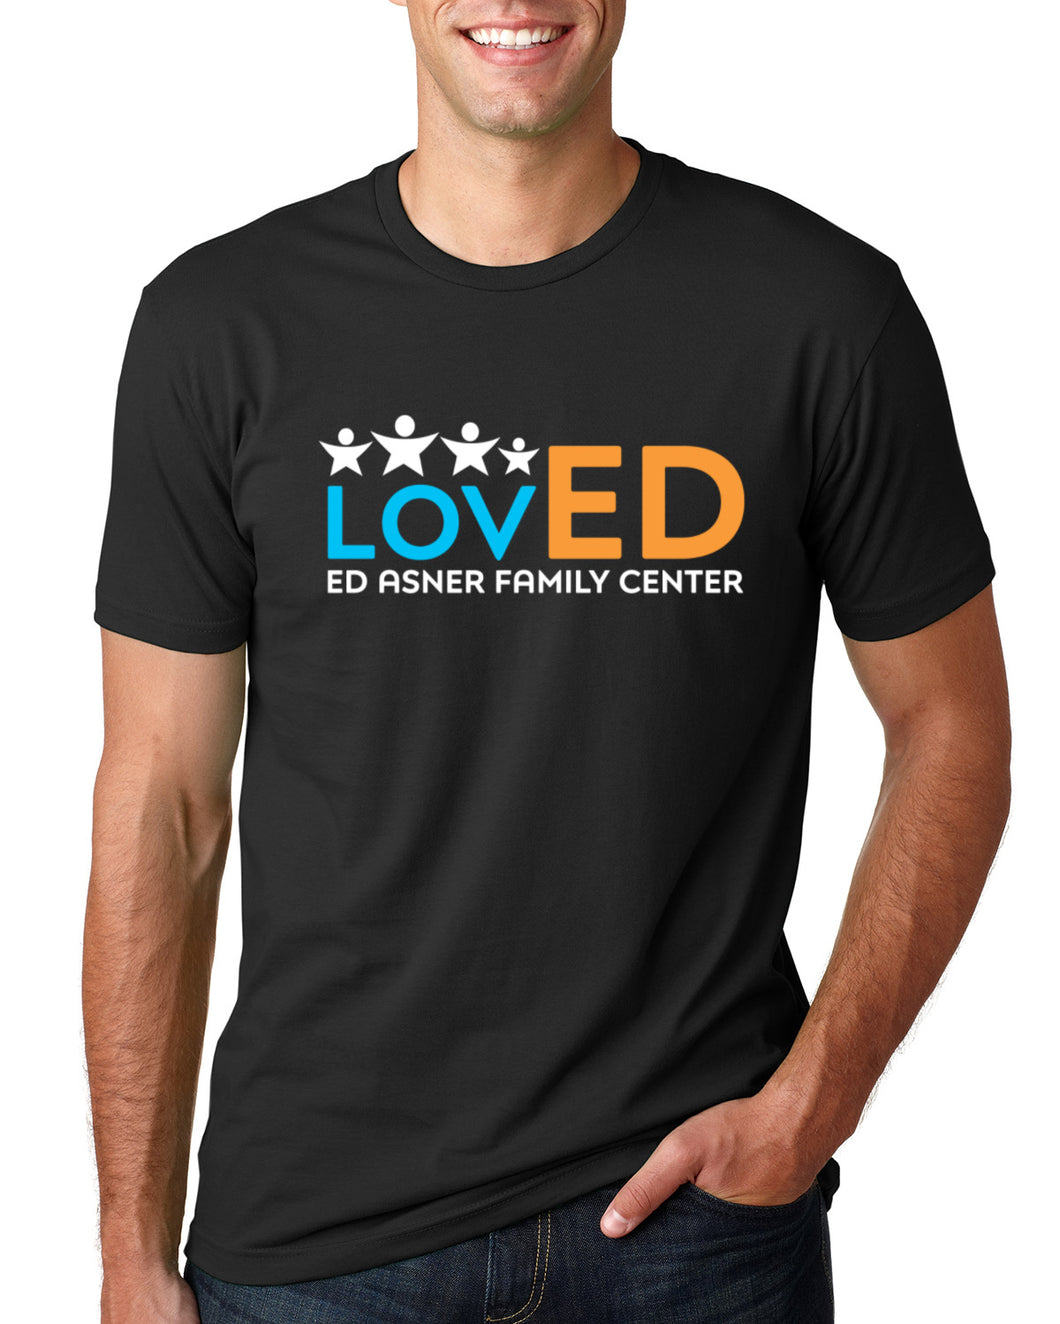 Ed Asner Family Center - LovED T-Shirt